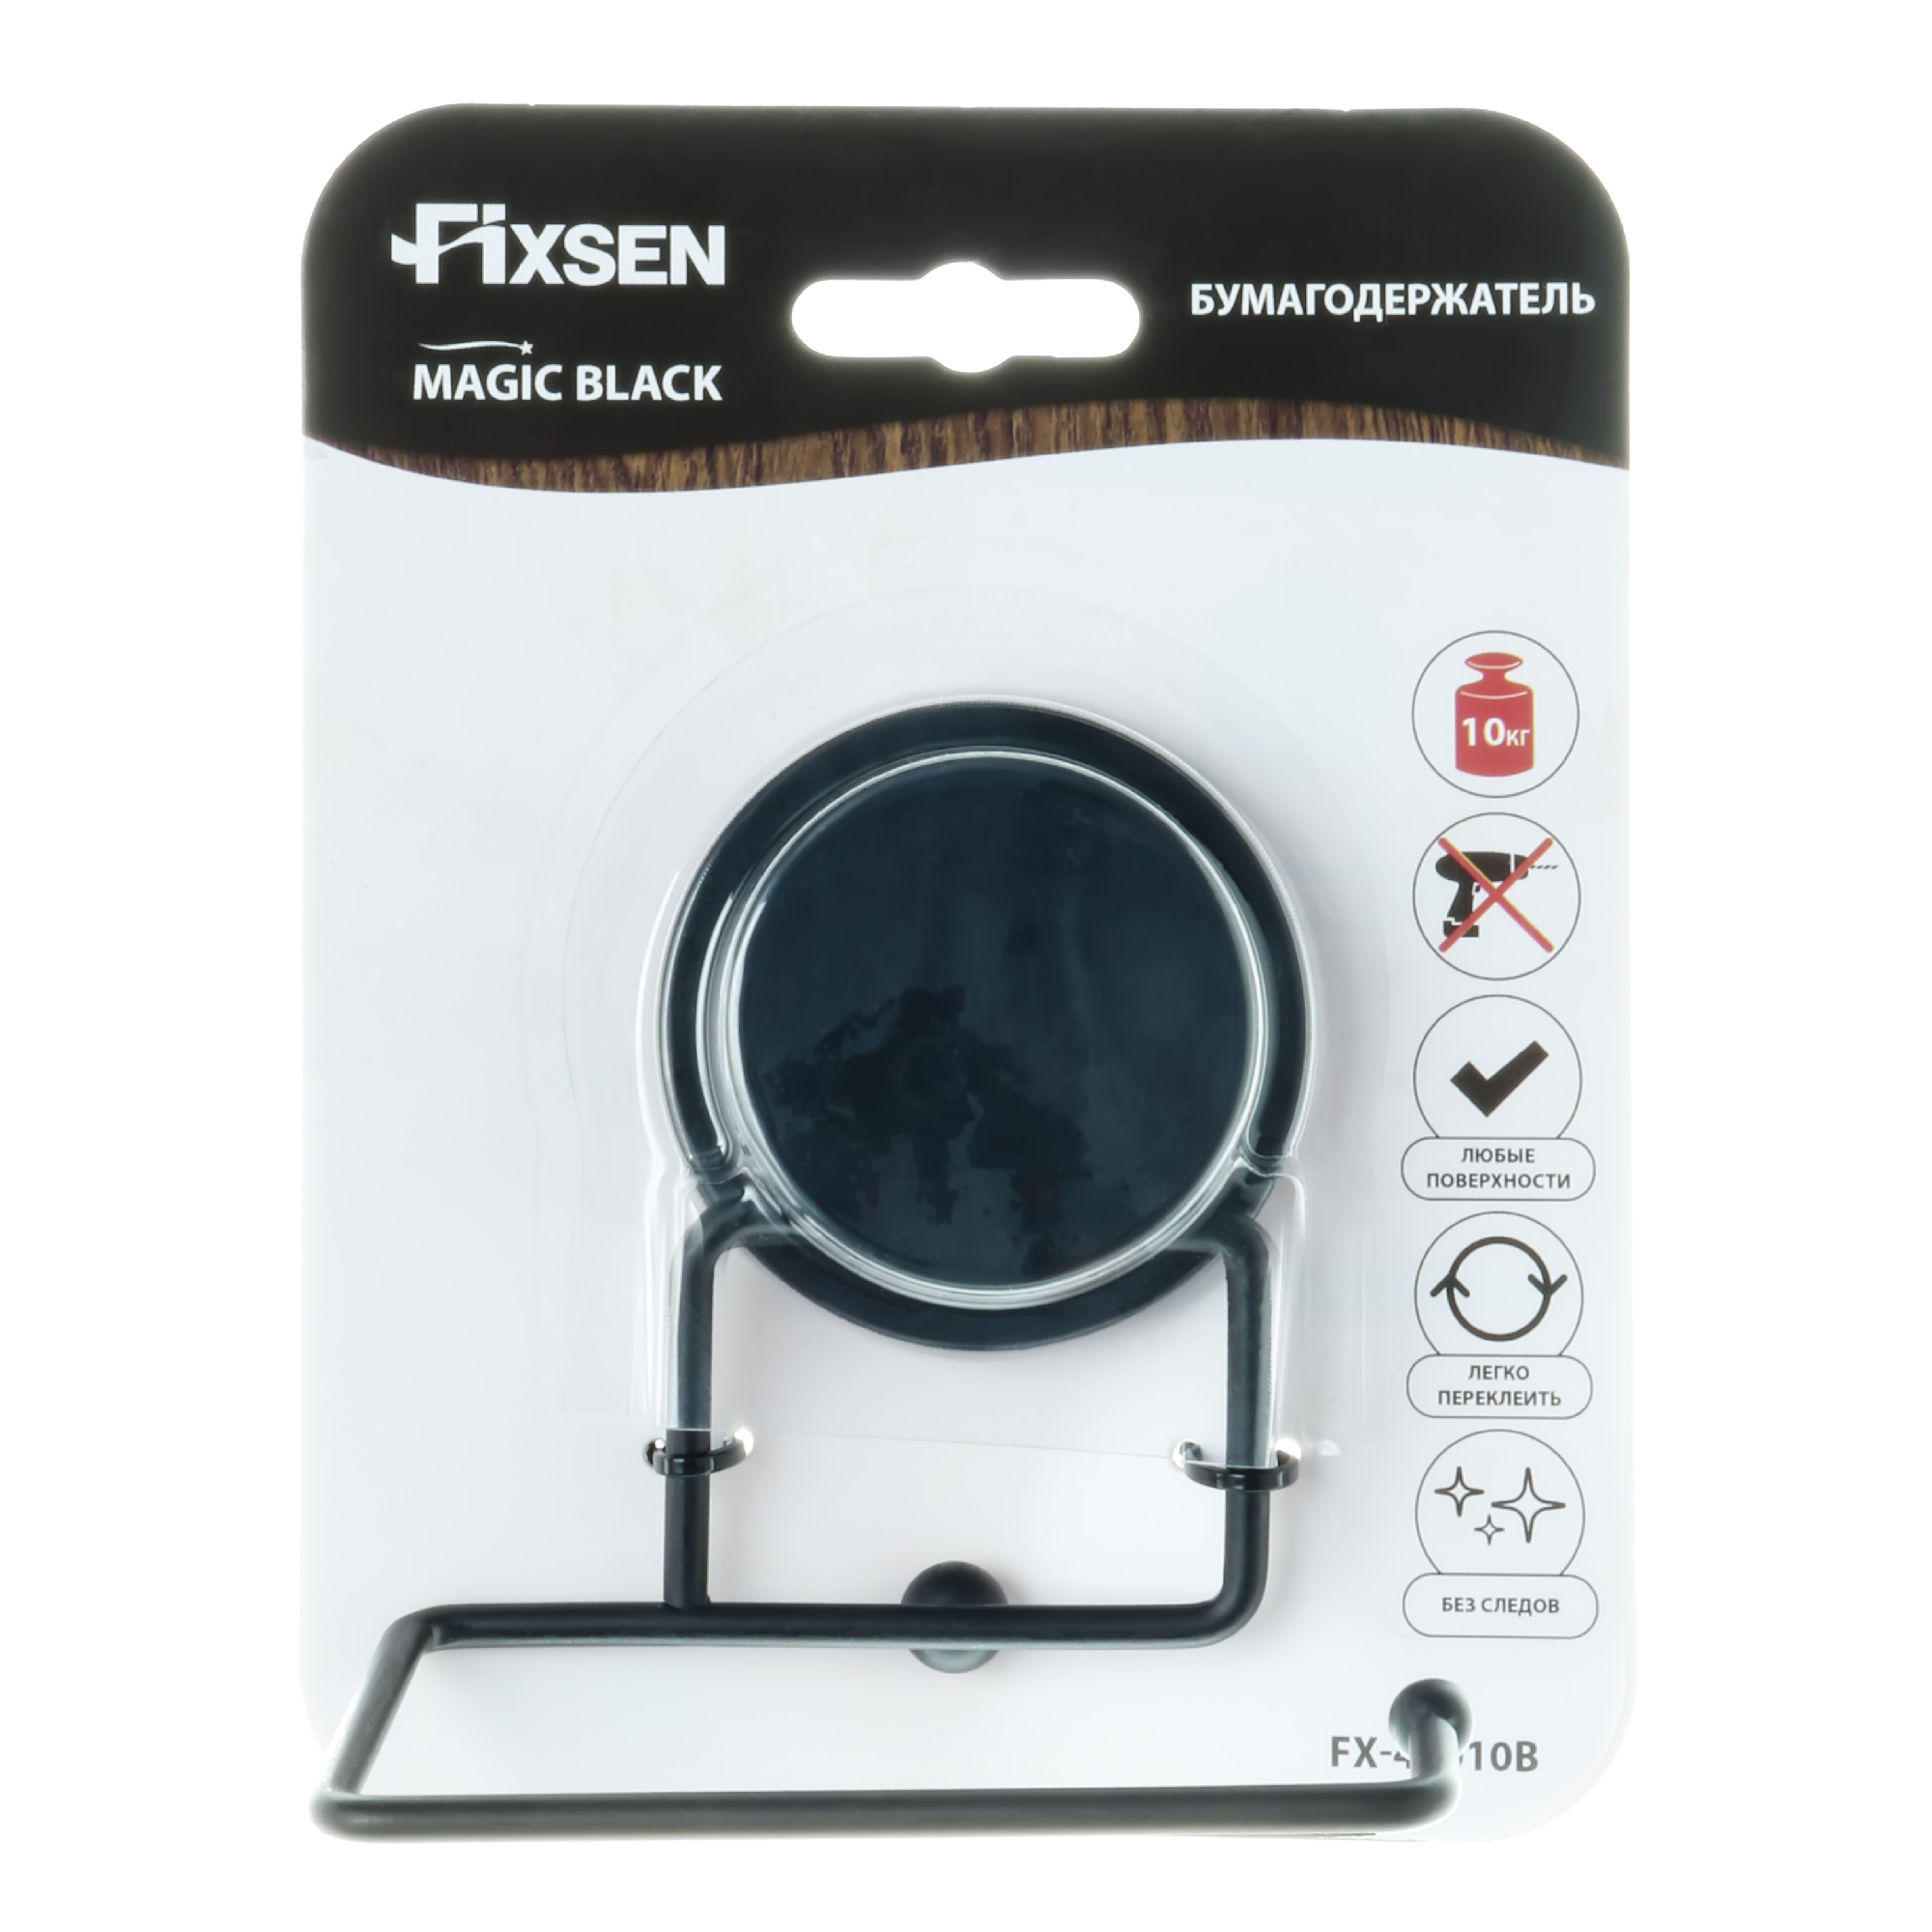 Бумагодержатель Fixsen без крышки Magic Black FX-45010B